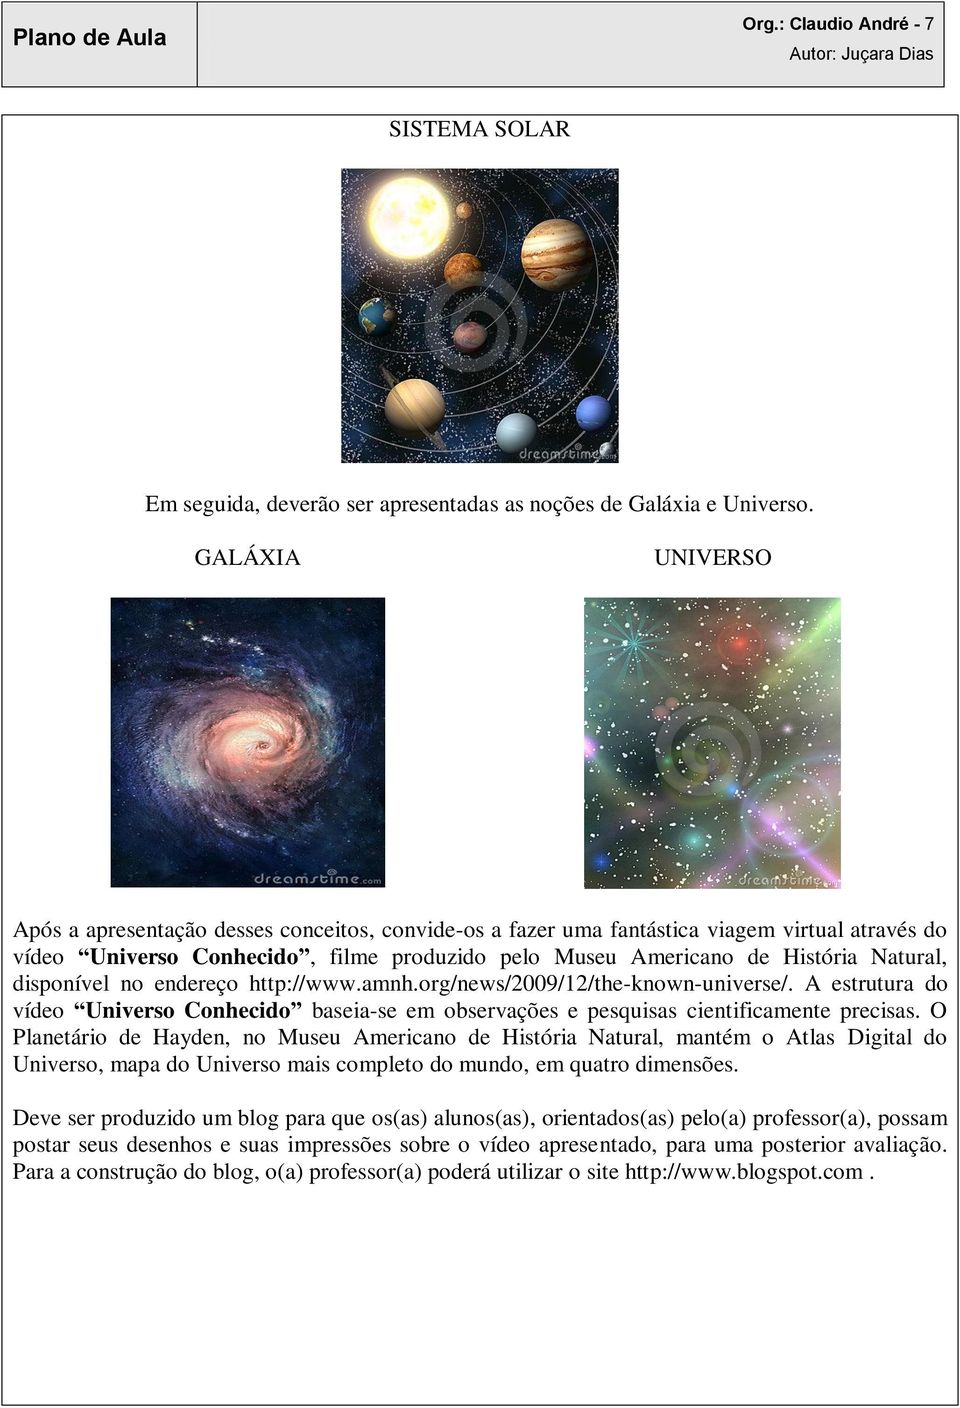 disponível no endereço http://www.amnh.org/news/2009/12/the-known-universe/. A estrutura do vídeo Universo Conhecido baseia-se em observações e pesquisas cientificamente precisas.